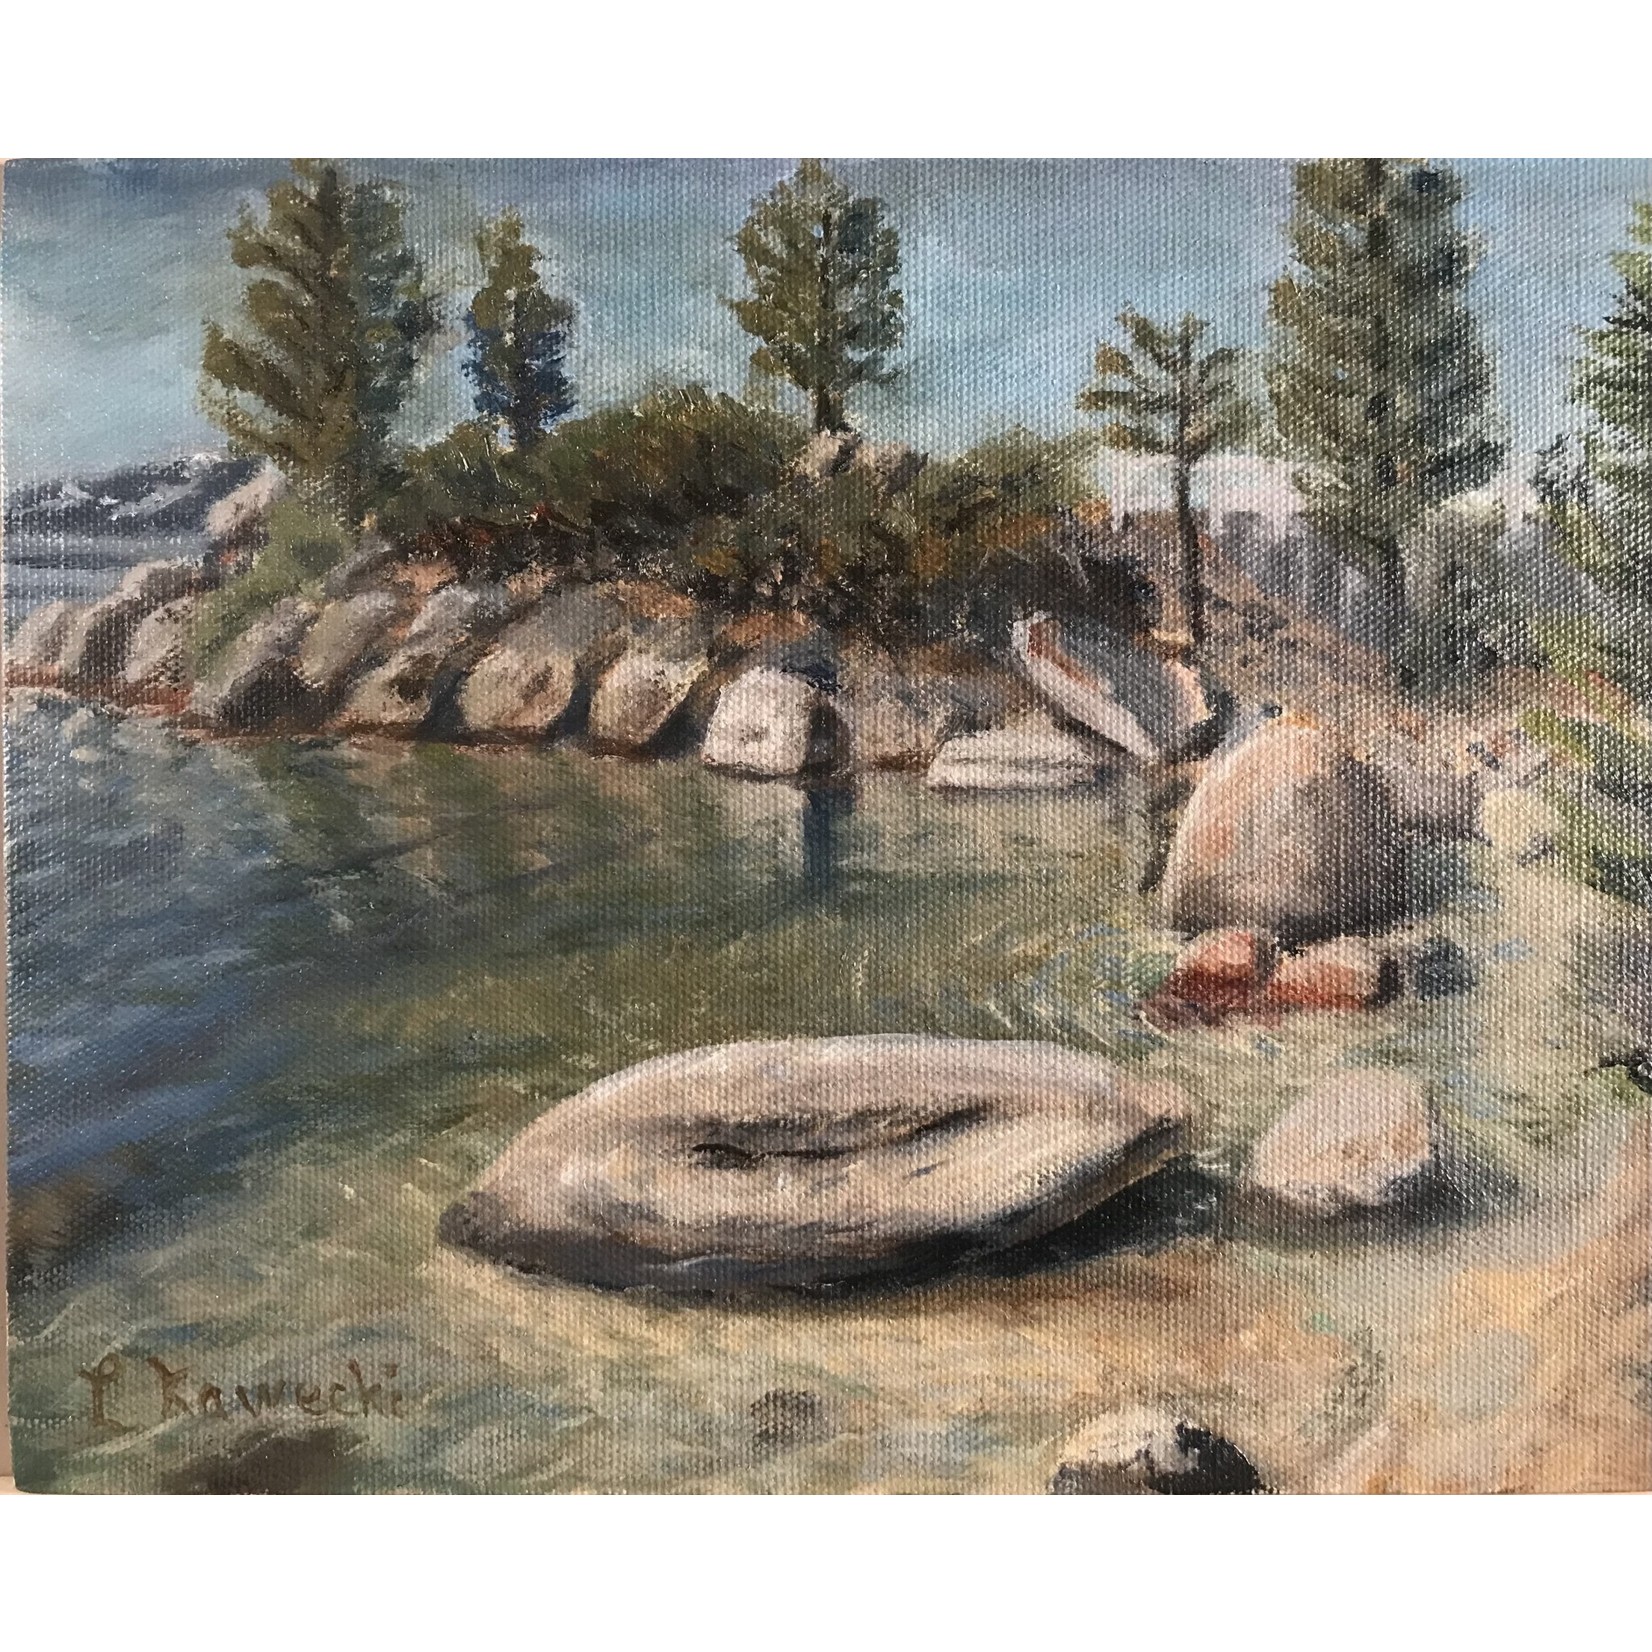 Lewis Kawecki "Crystal Cove" - Original Oil Painting